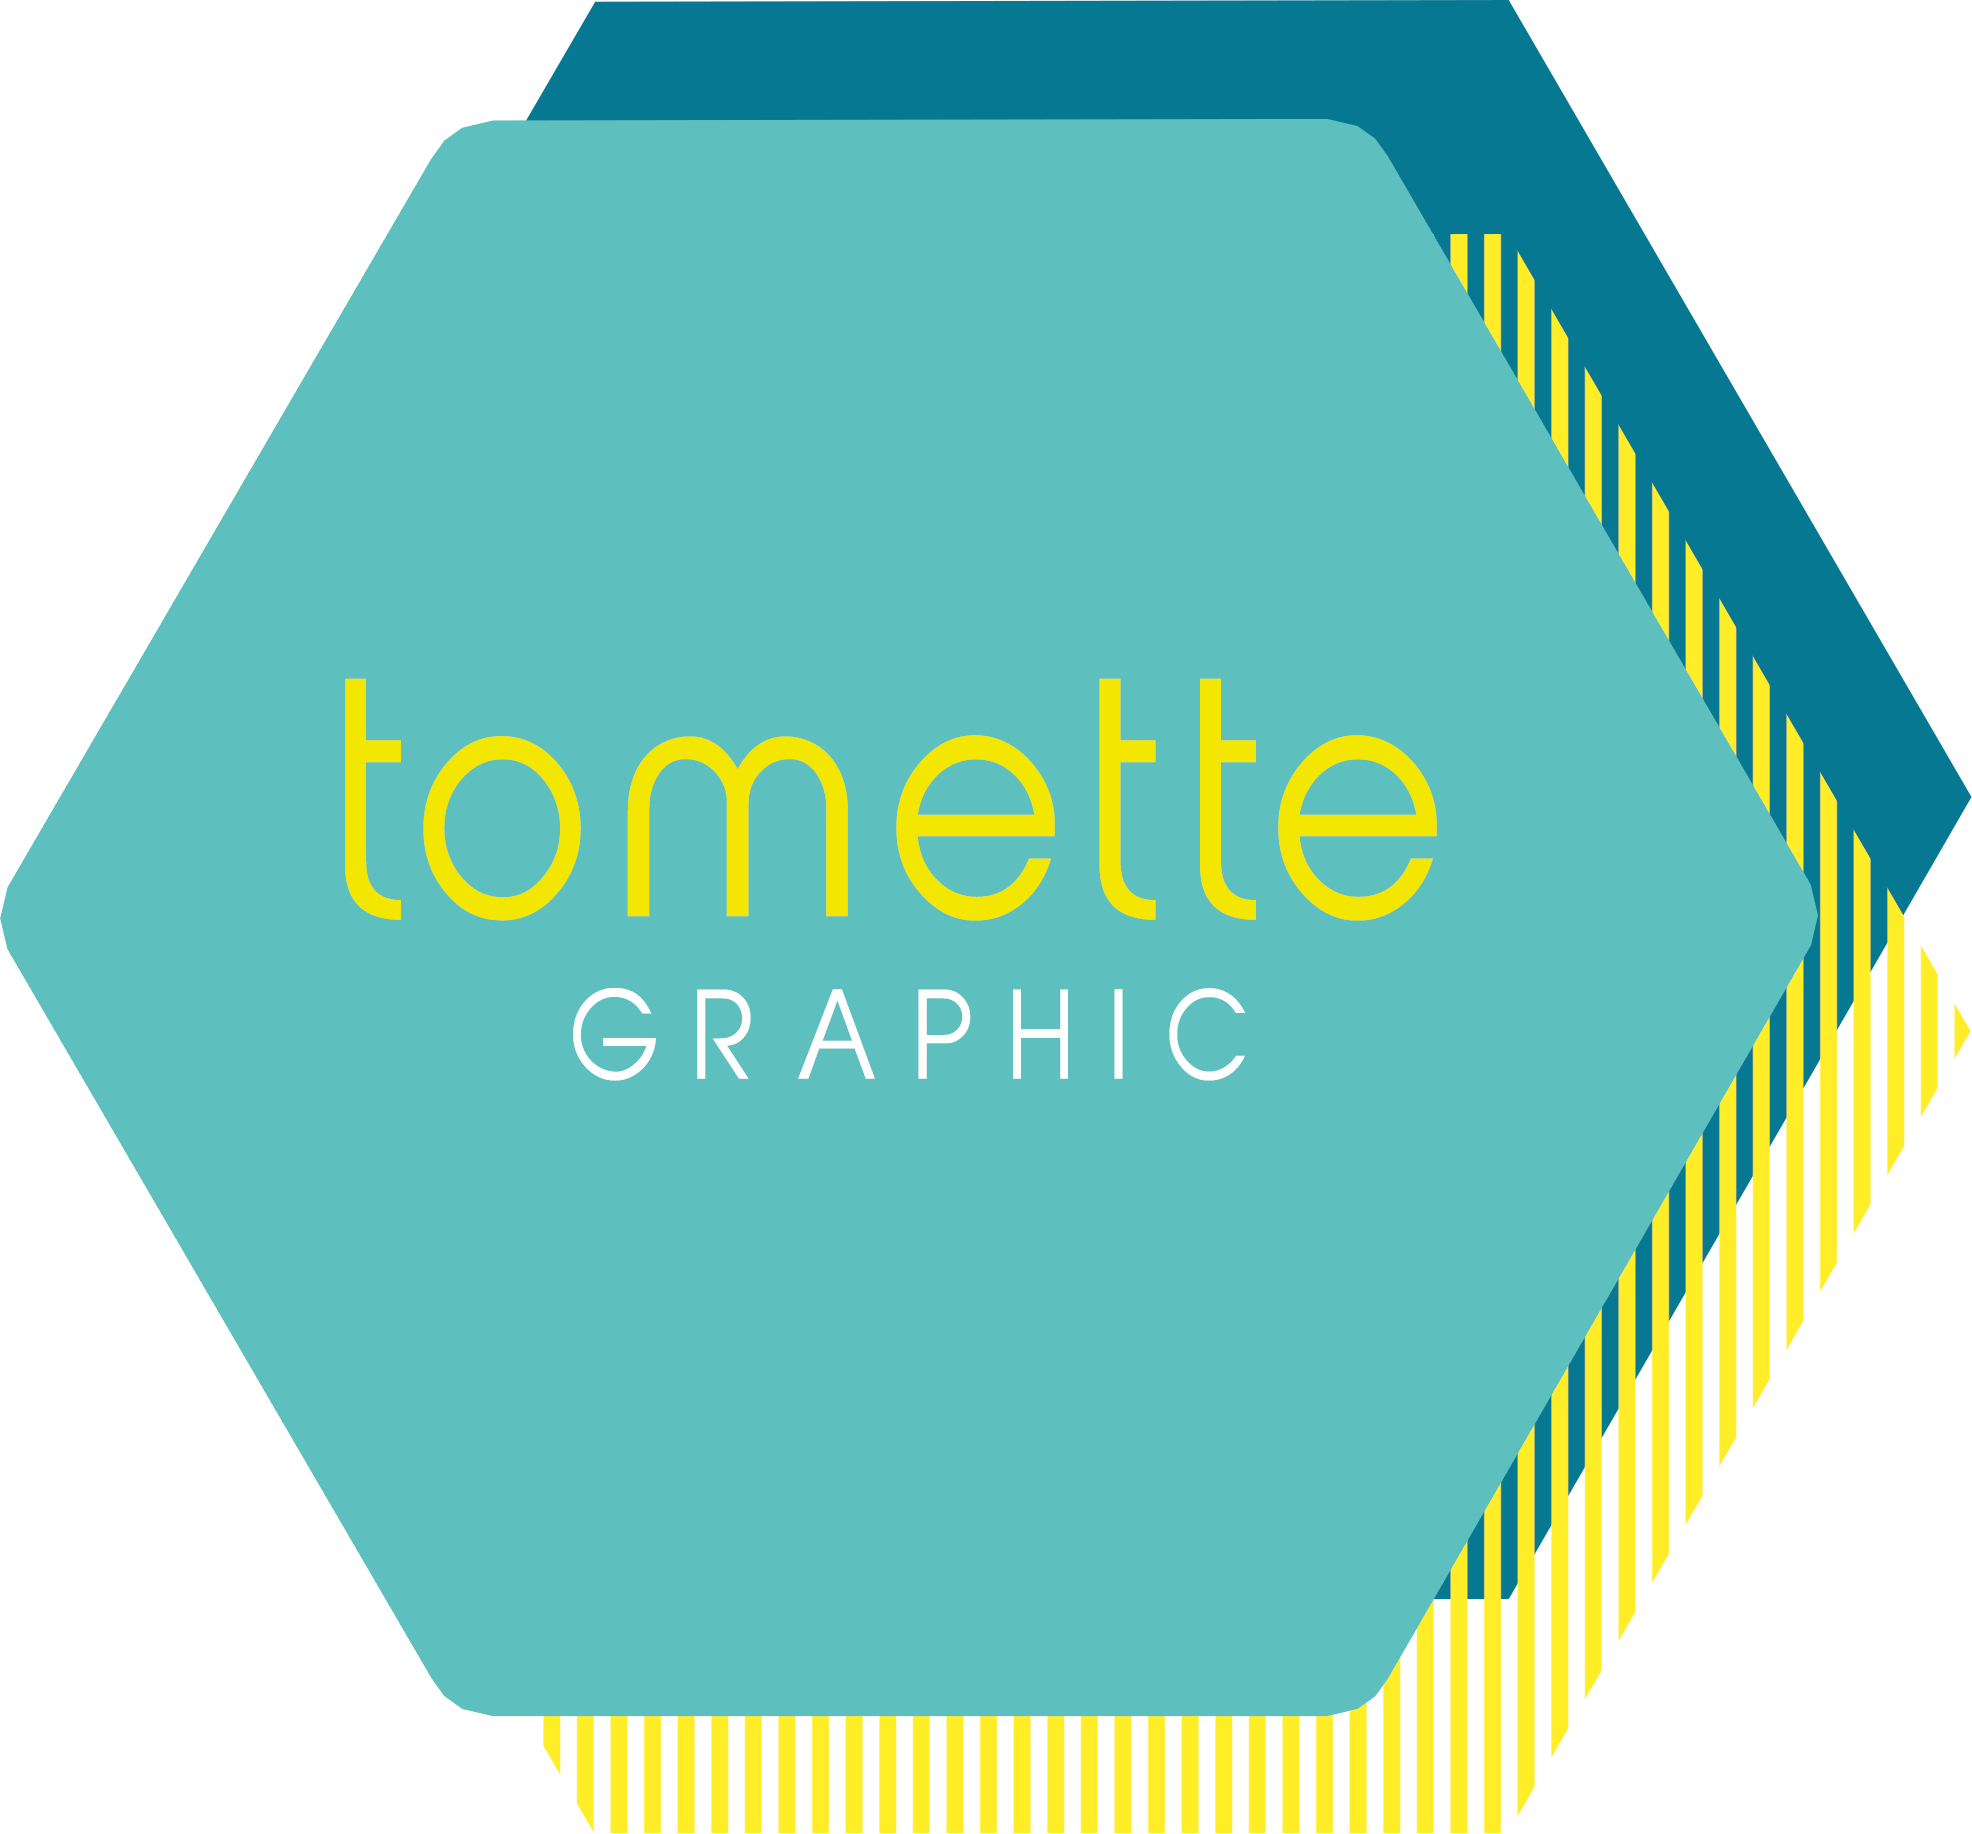 Tomette Graphic